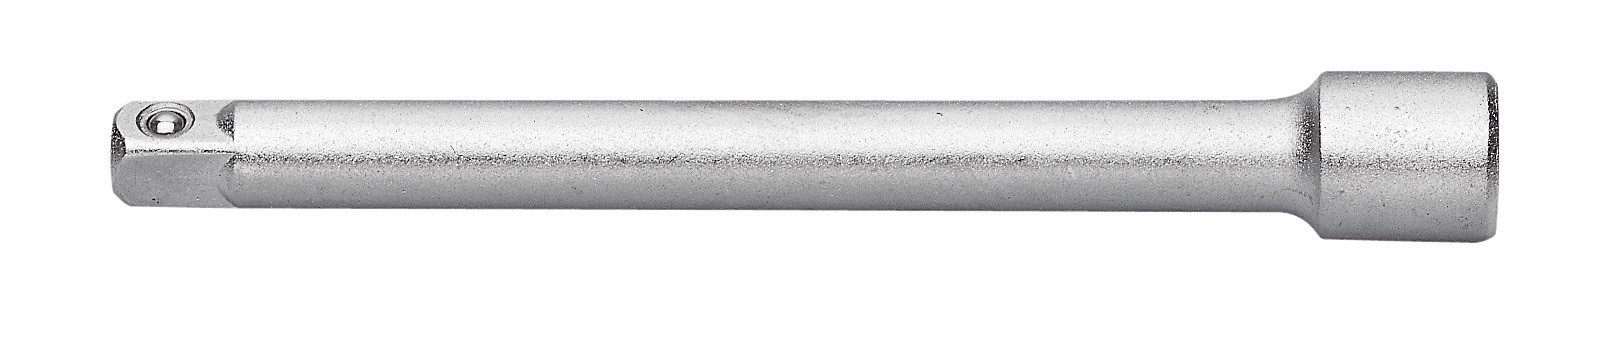 Proxxon 6,3mm 1/4 Zoll Verlängerung 150 mm